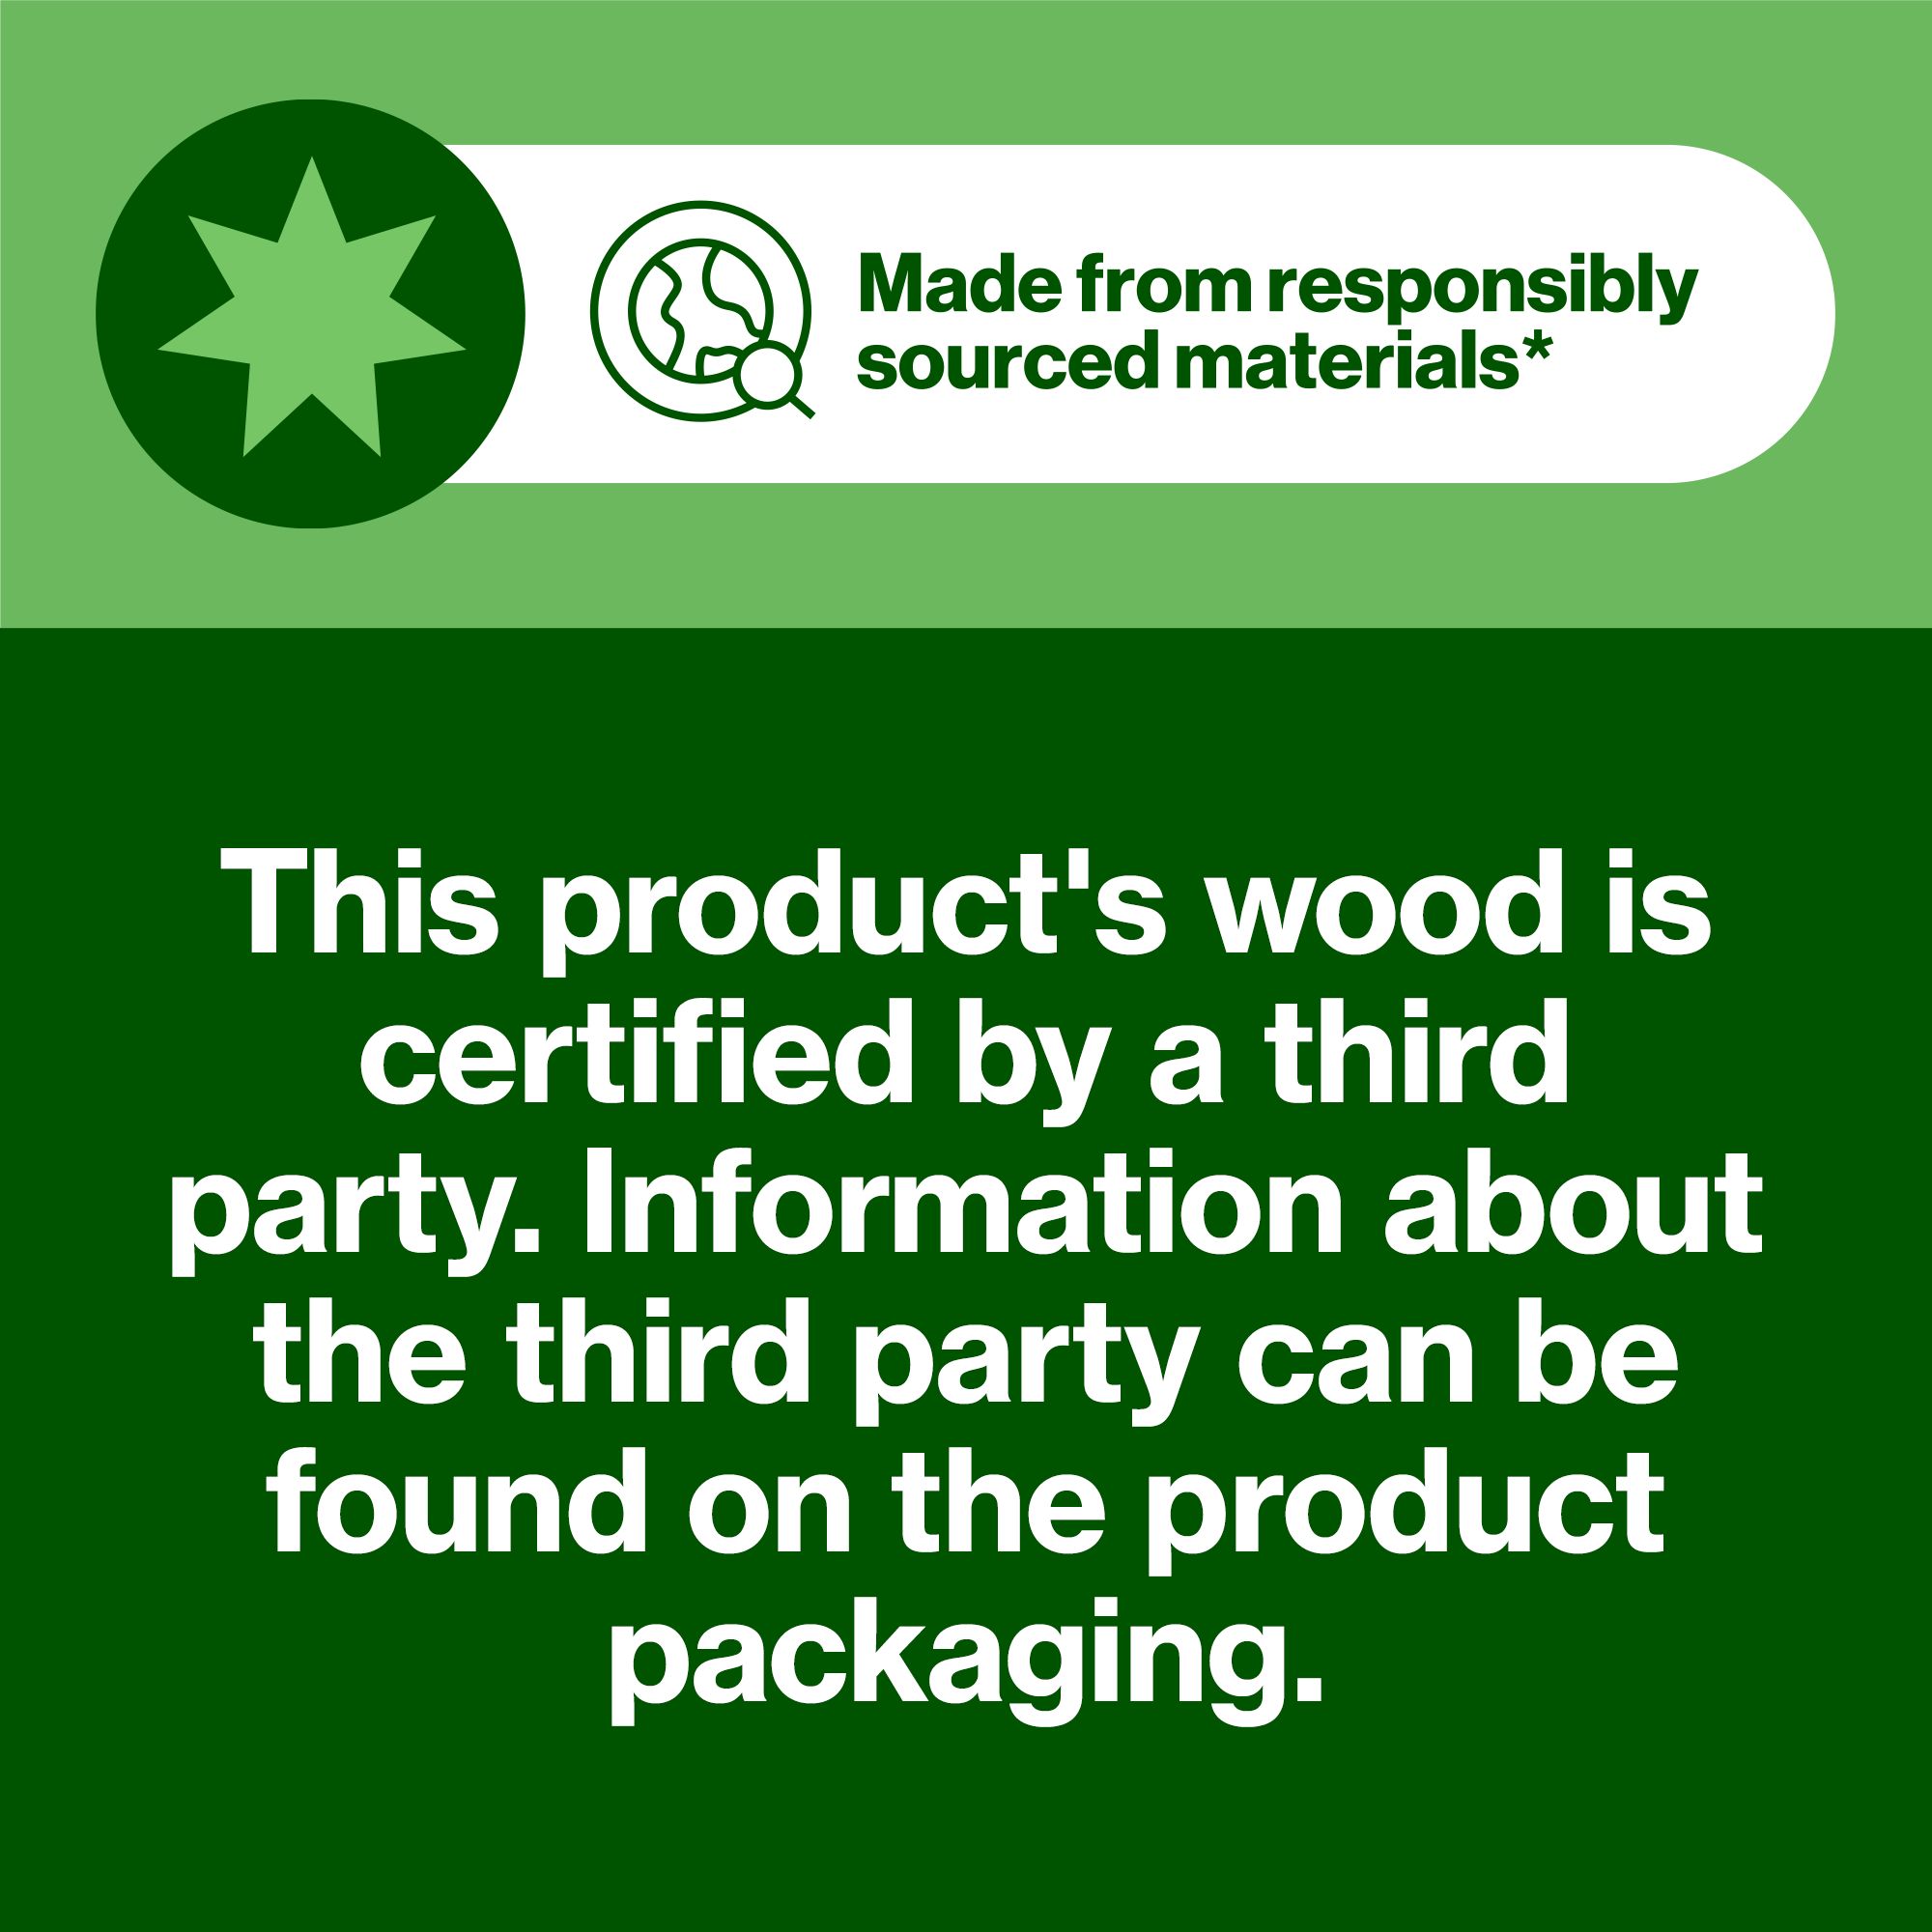 Hardwood Plywood (L)1.22m (W)0.61m (T)9mm